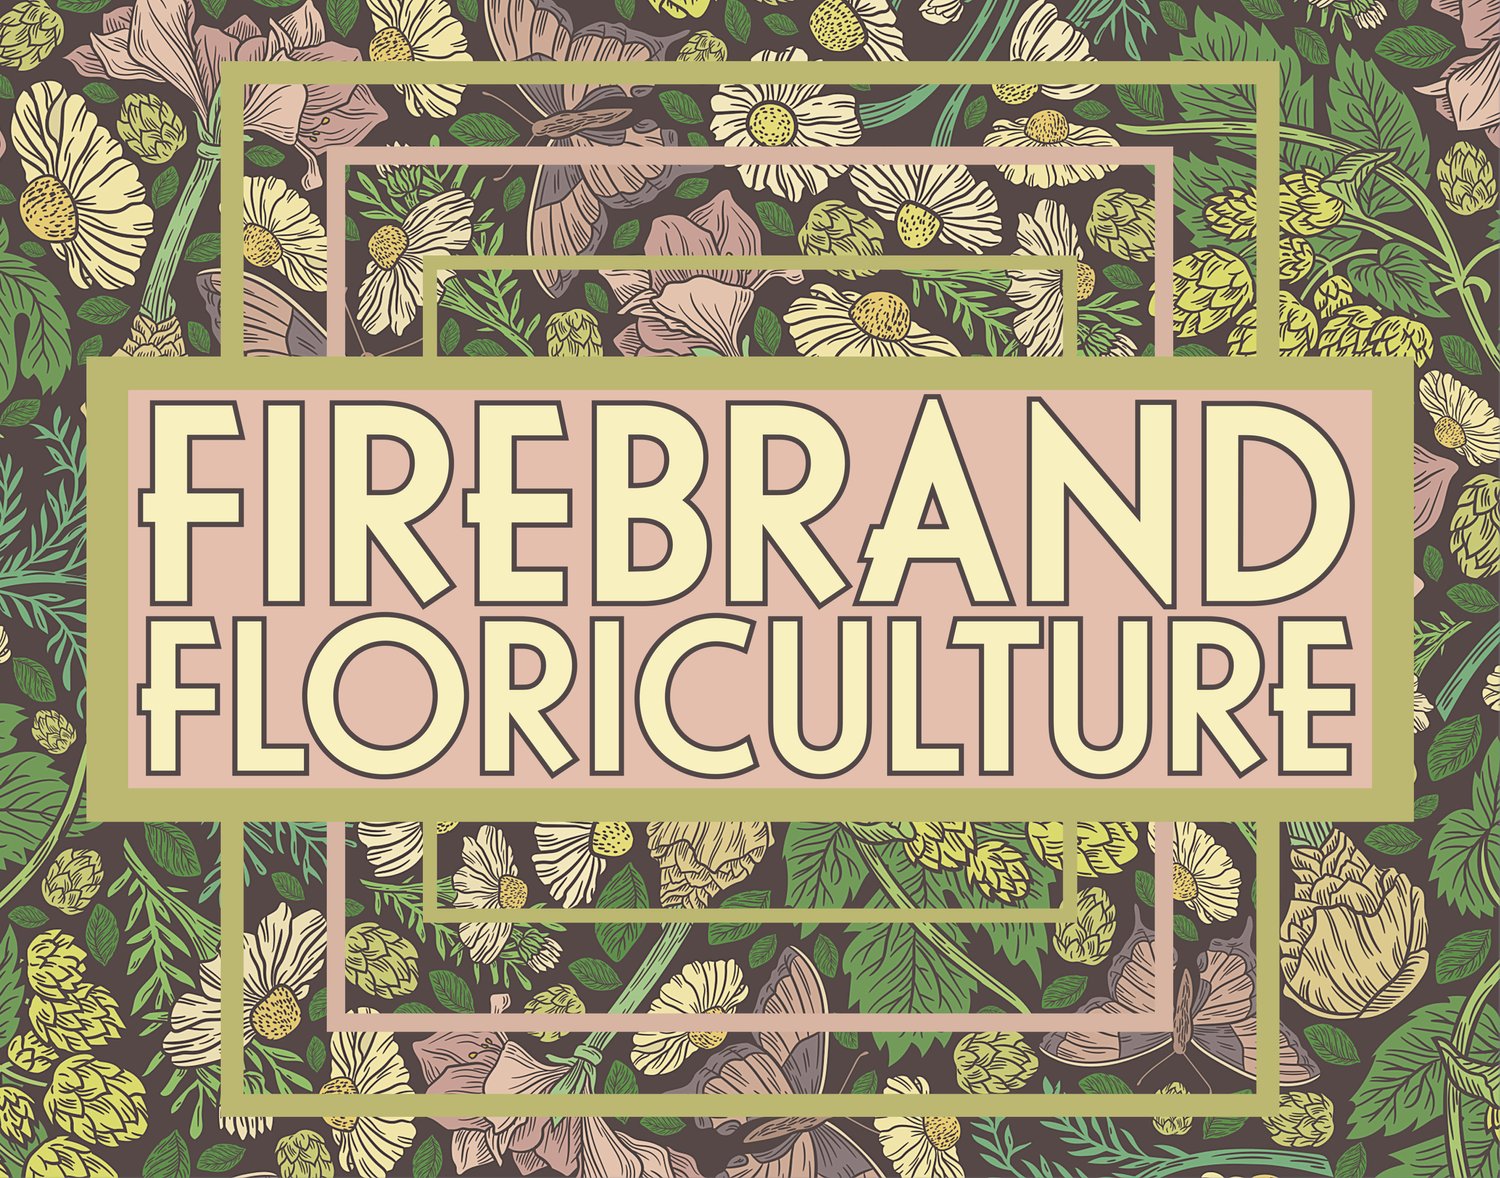 Firebrand Floriculture